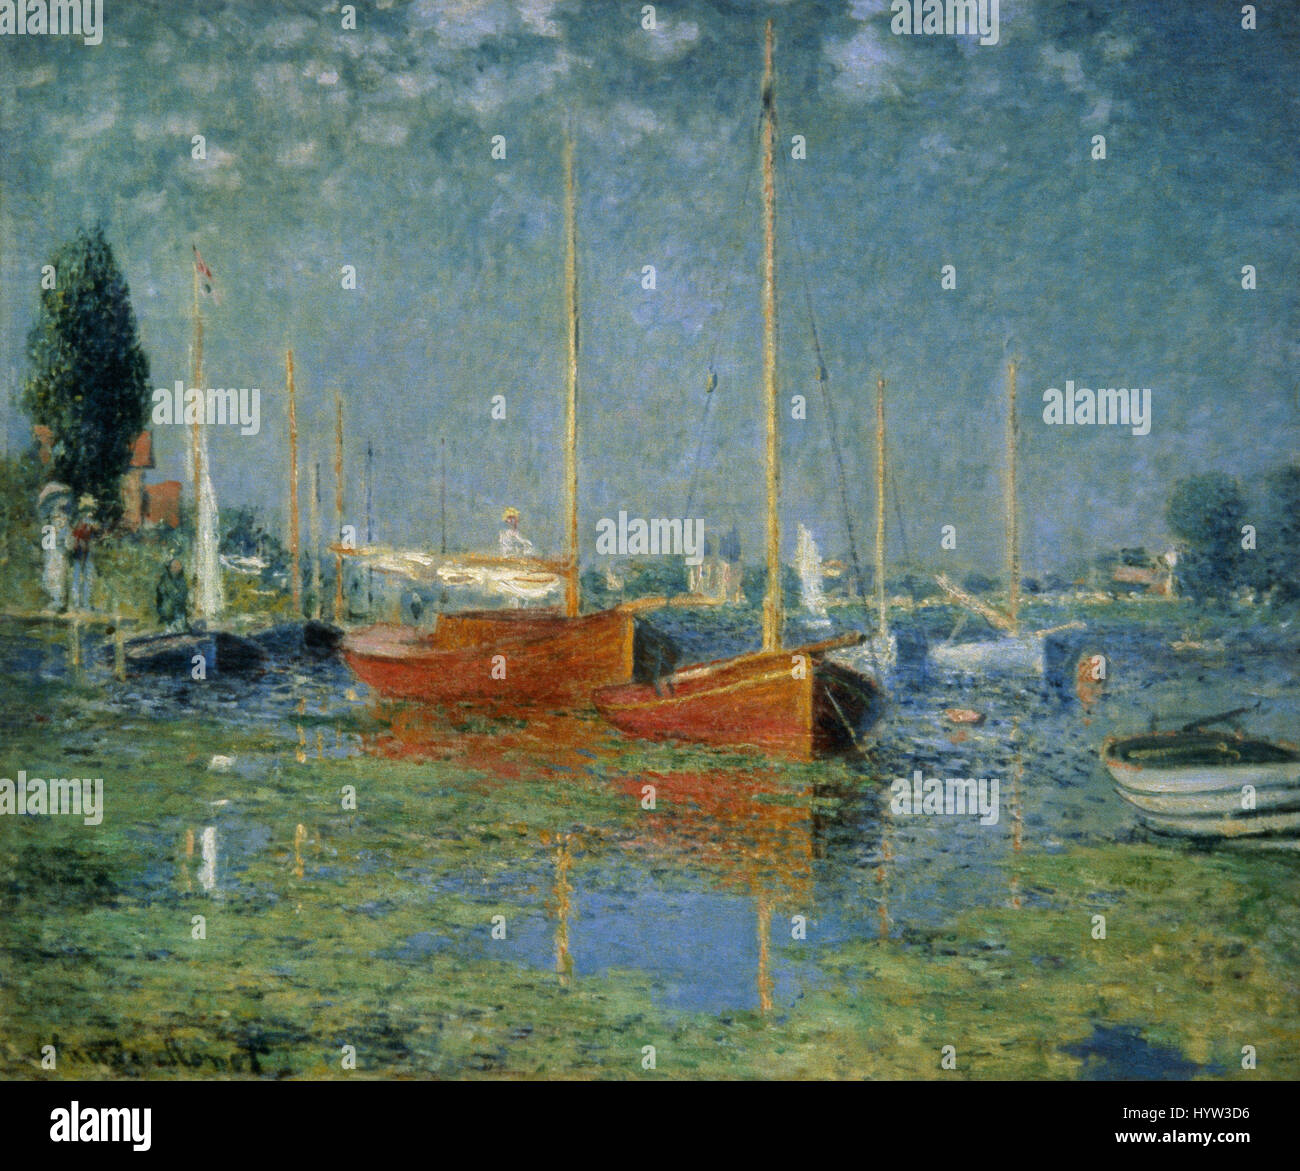 Claude Monet (1906-1957). Le peintre français. L'impressionnisme. Les bateaux rouges, Argenteuil. 1875. Musée d'Orsay. Paris. La France. Banque D'Images